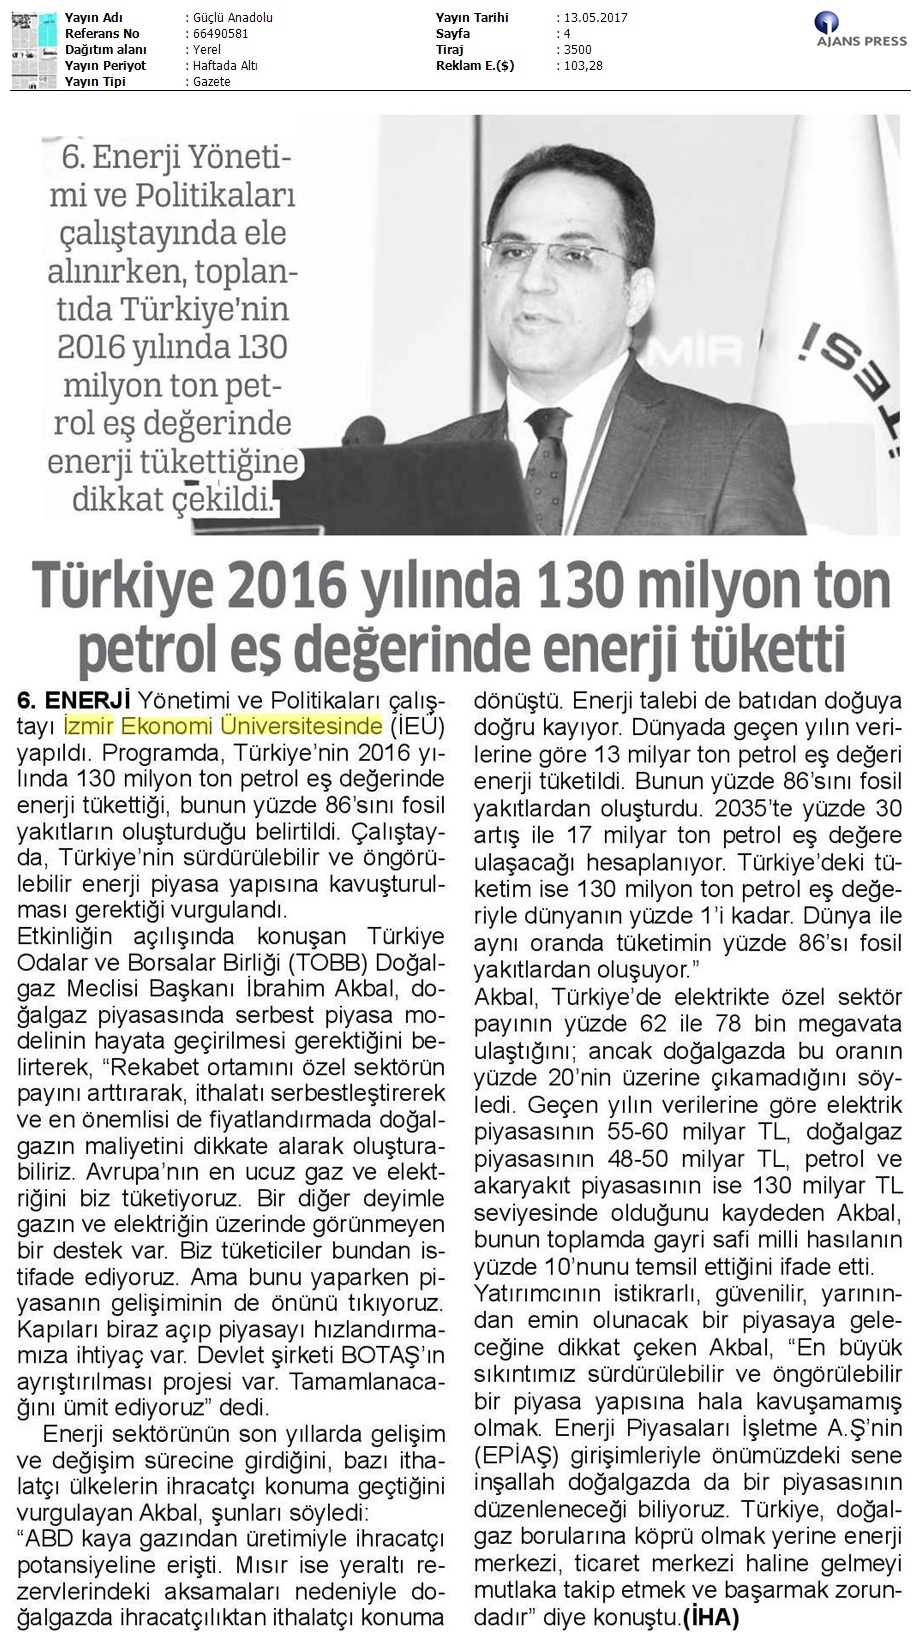 Türkiye 130 milyon ton petrol değerinde enerji tüketti